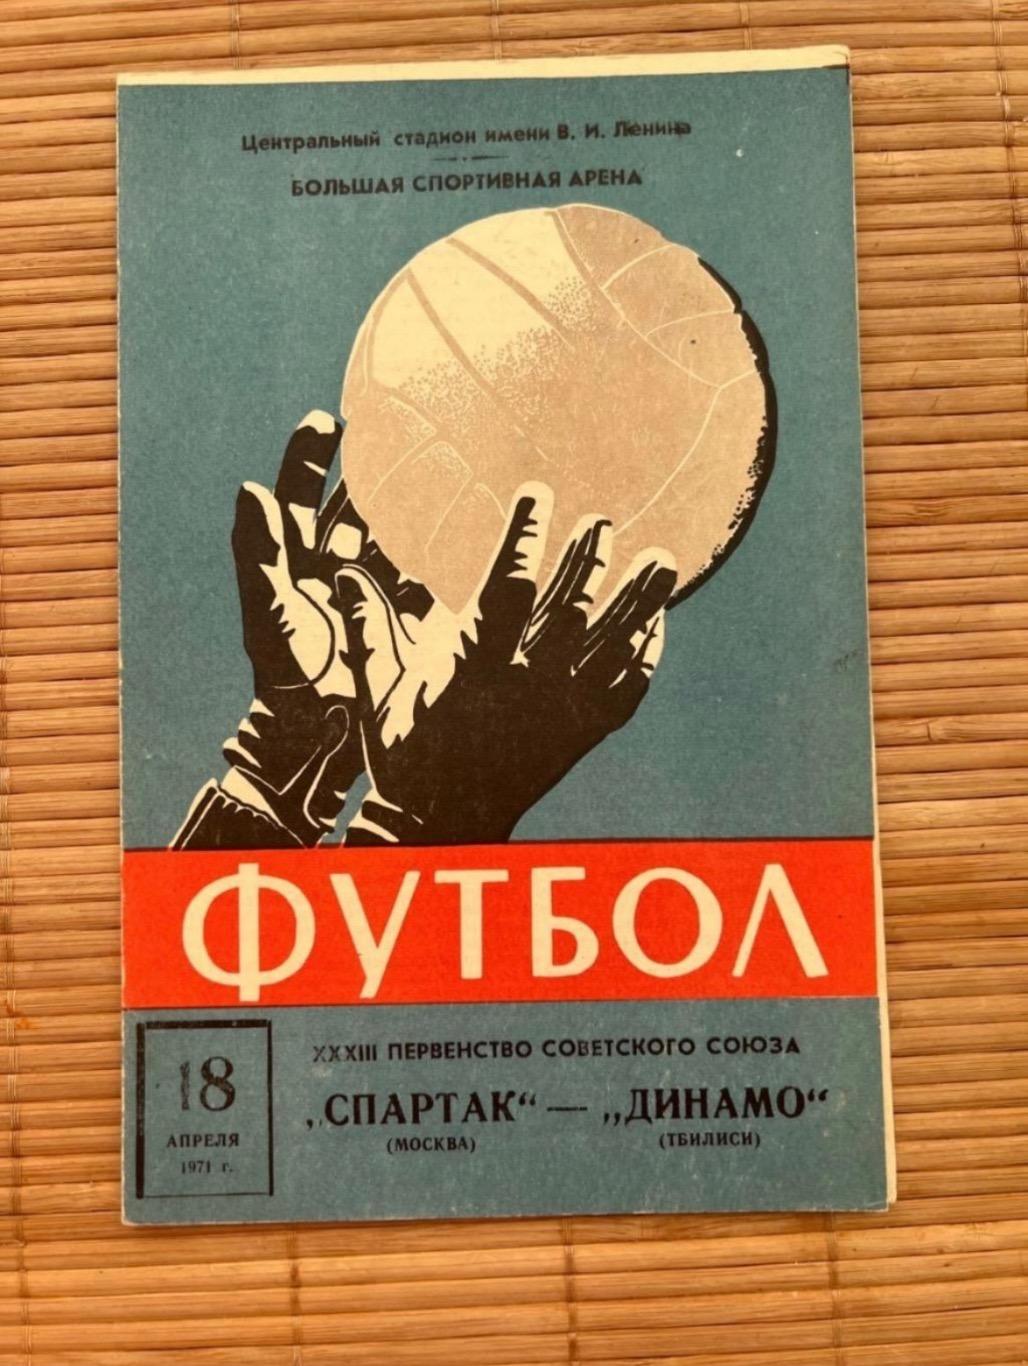 Спартак Москва - Динамо тбилиси 18.04.1971.